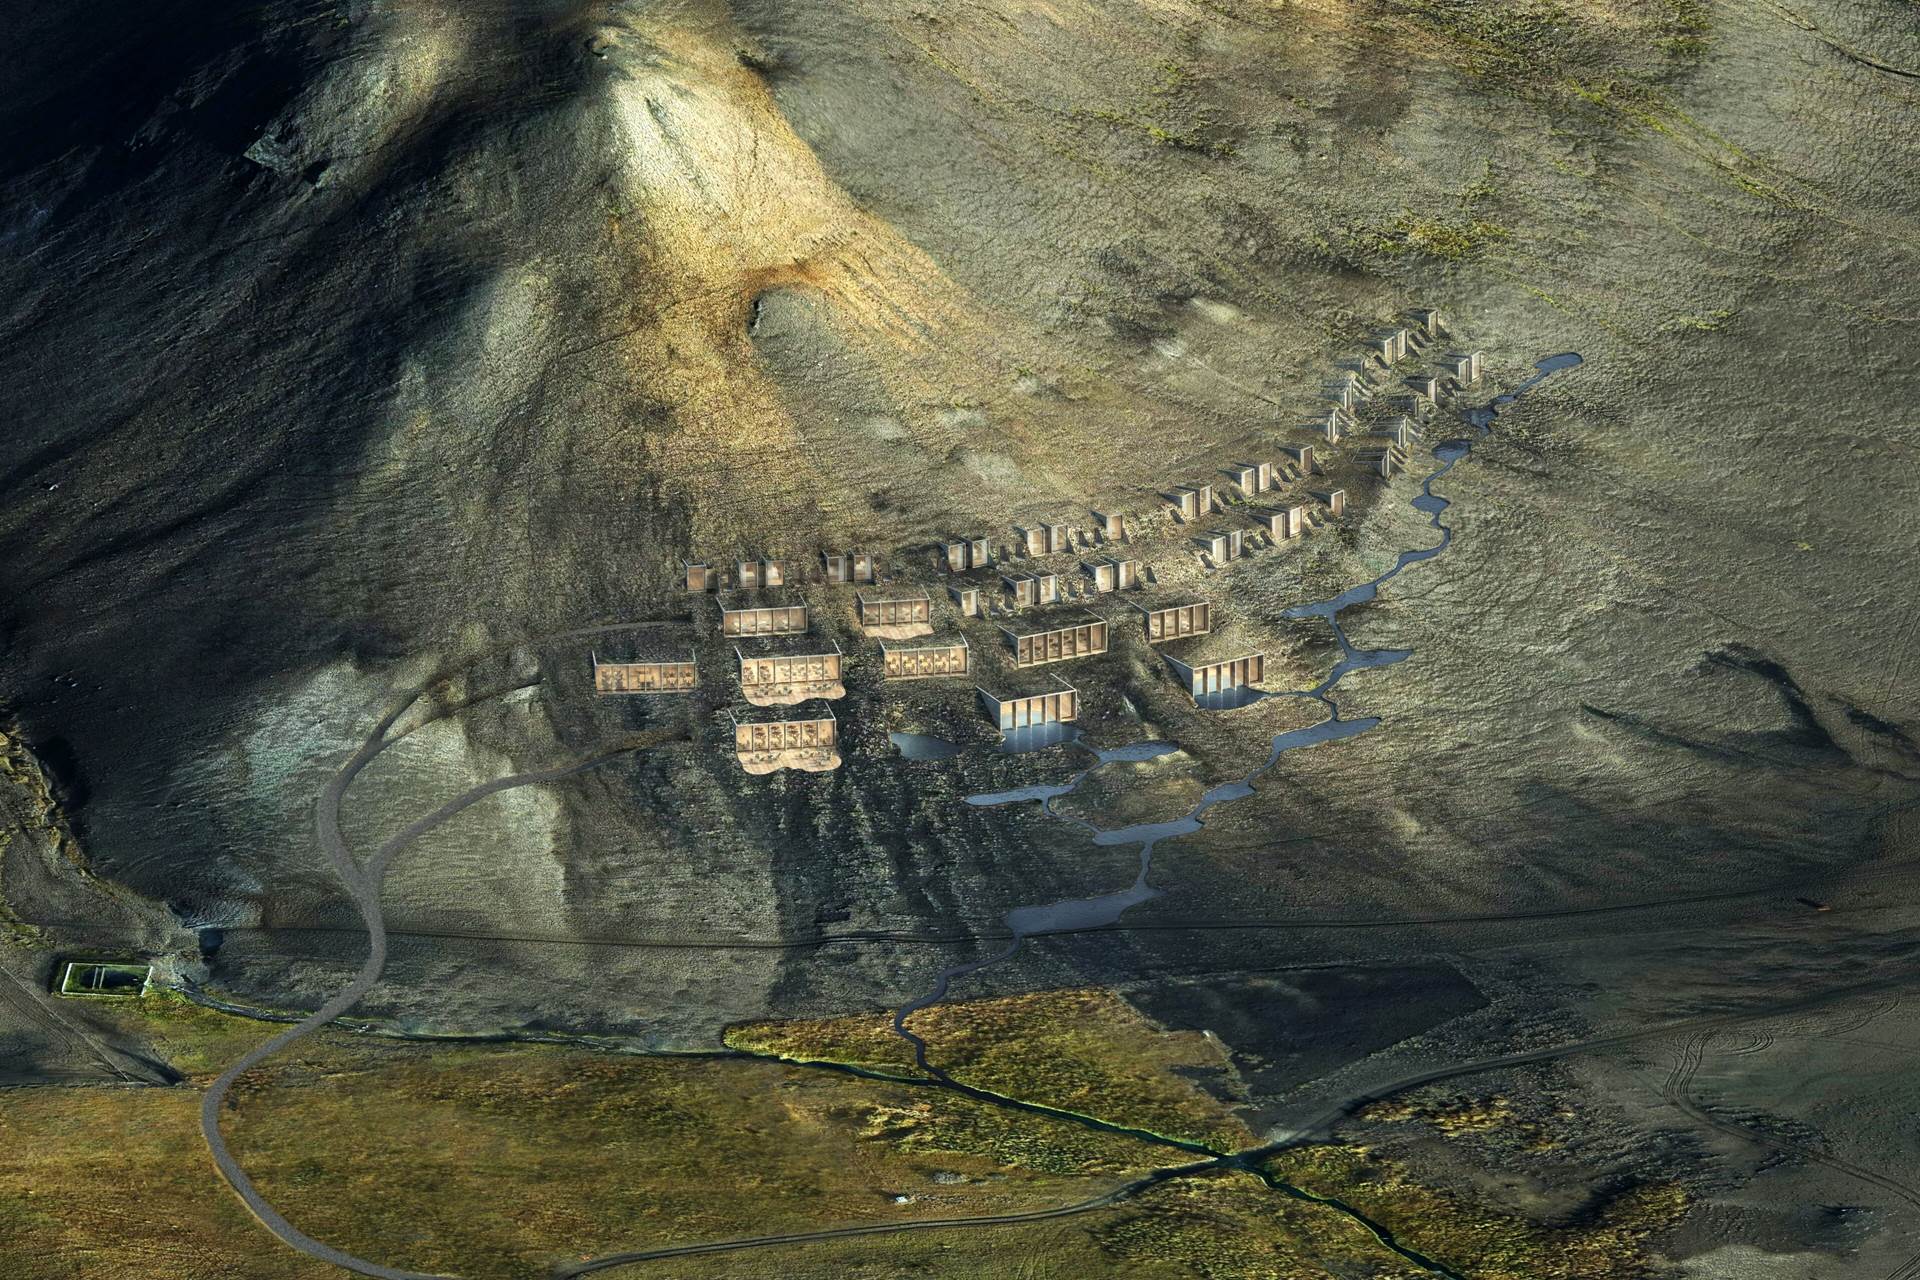 Fyrirhuguð uppbygging hótels í Þjórsárdal - mynd